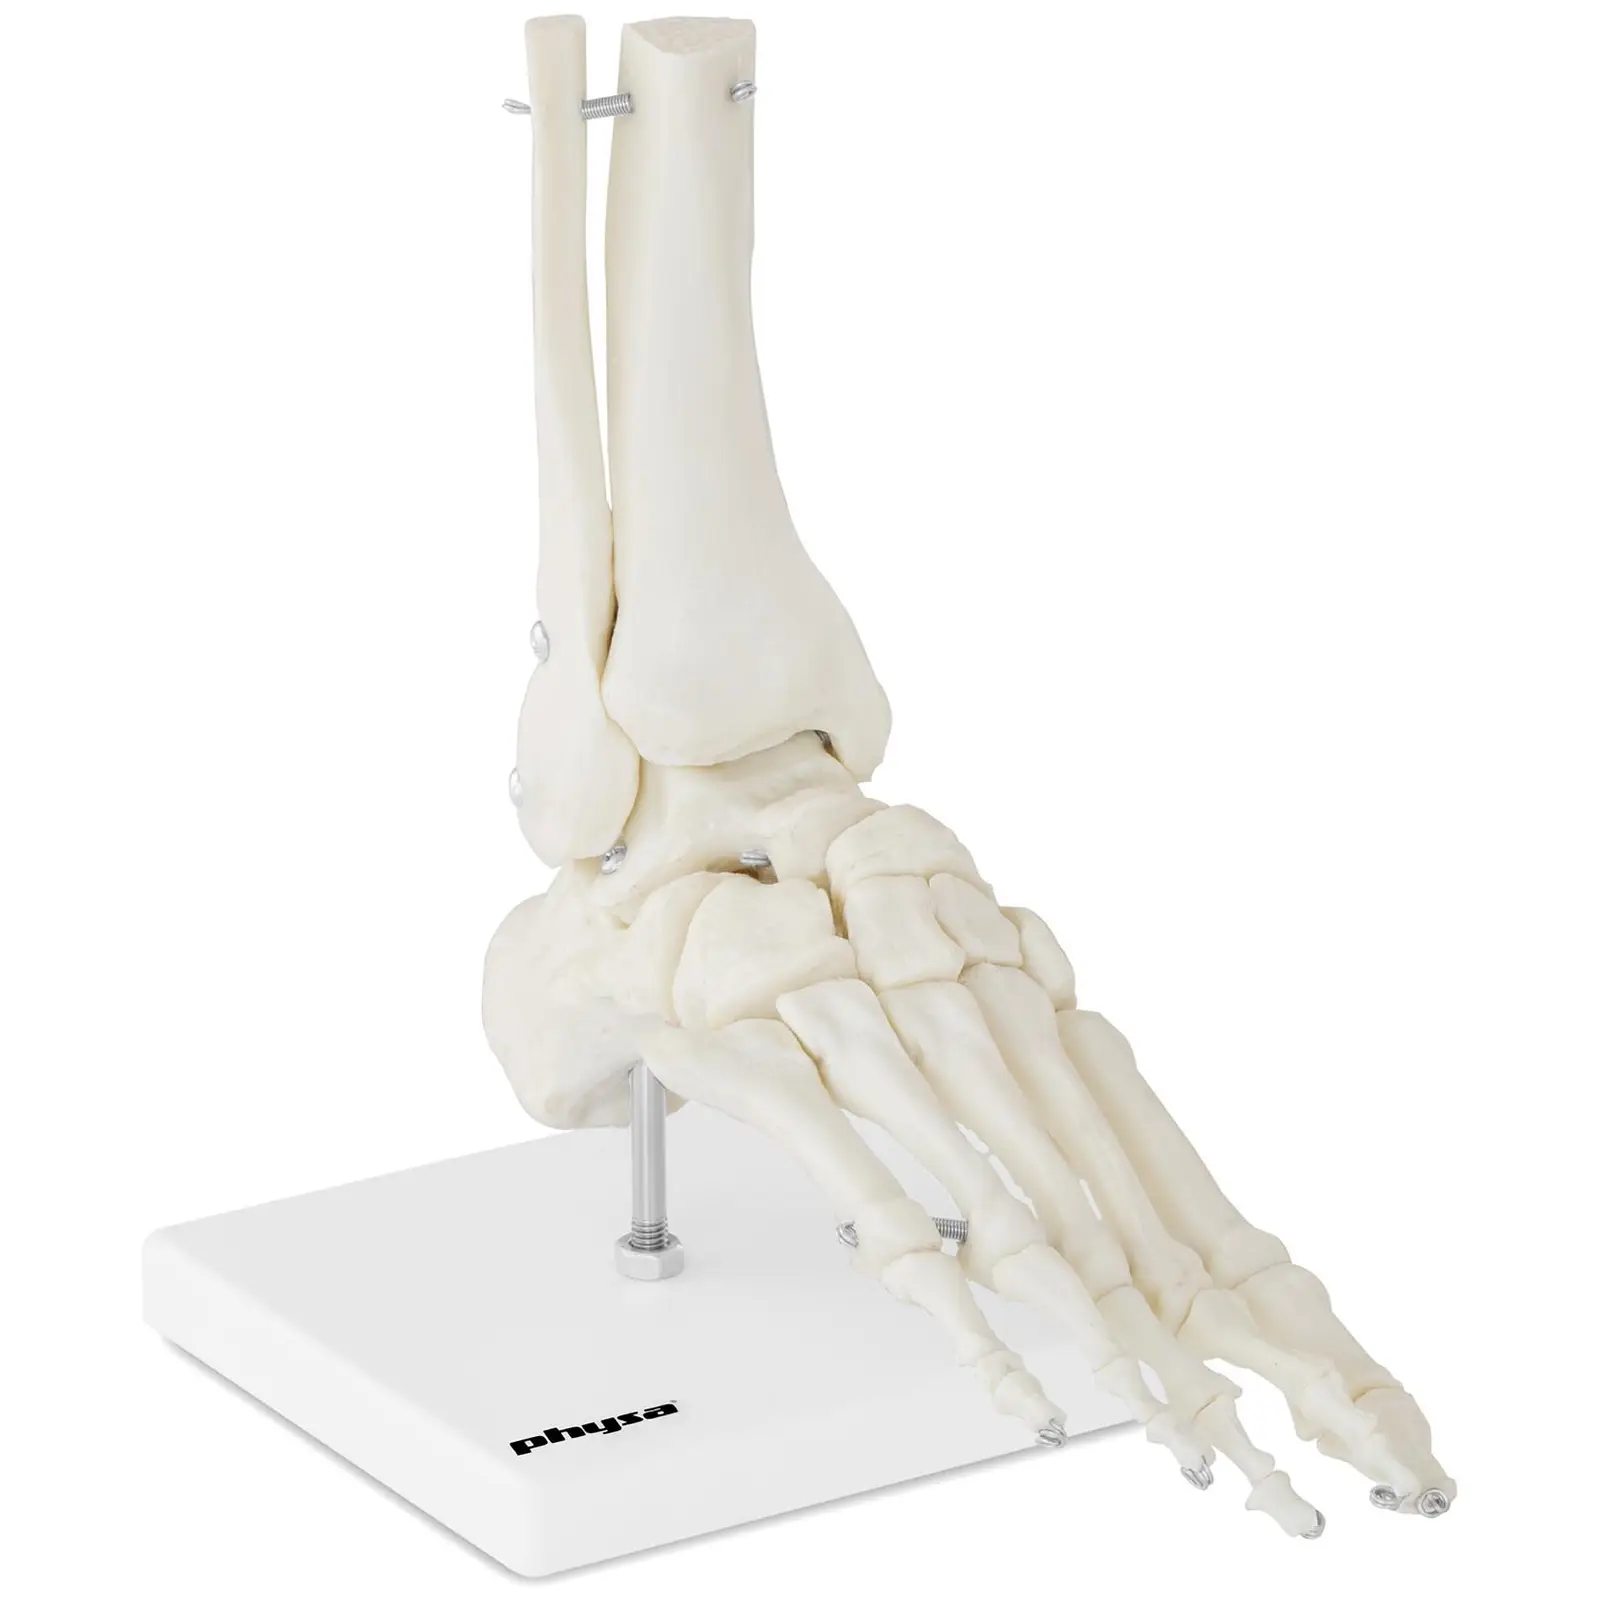 Model de schelet de picior